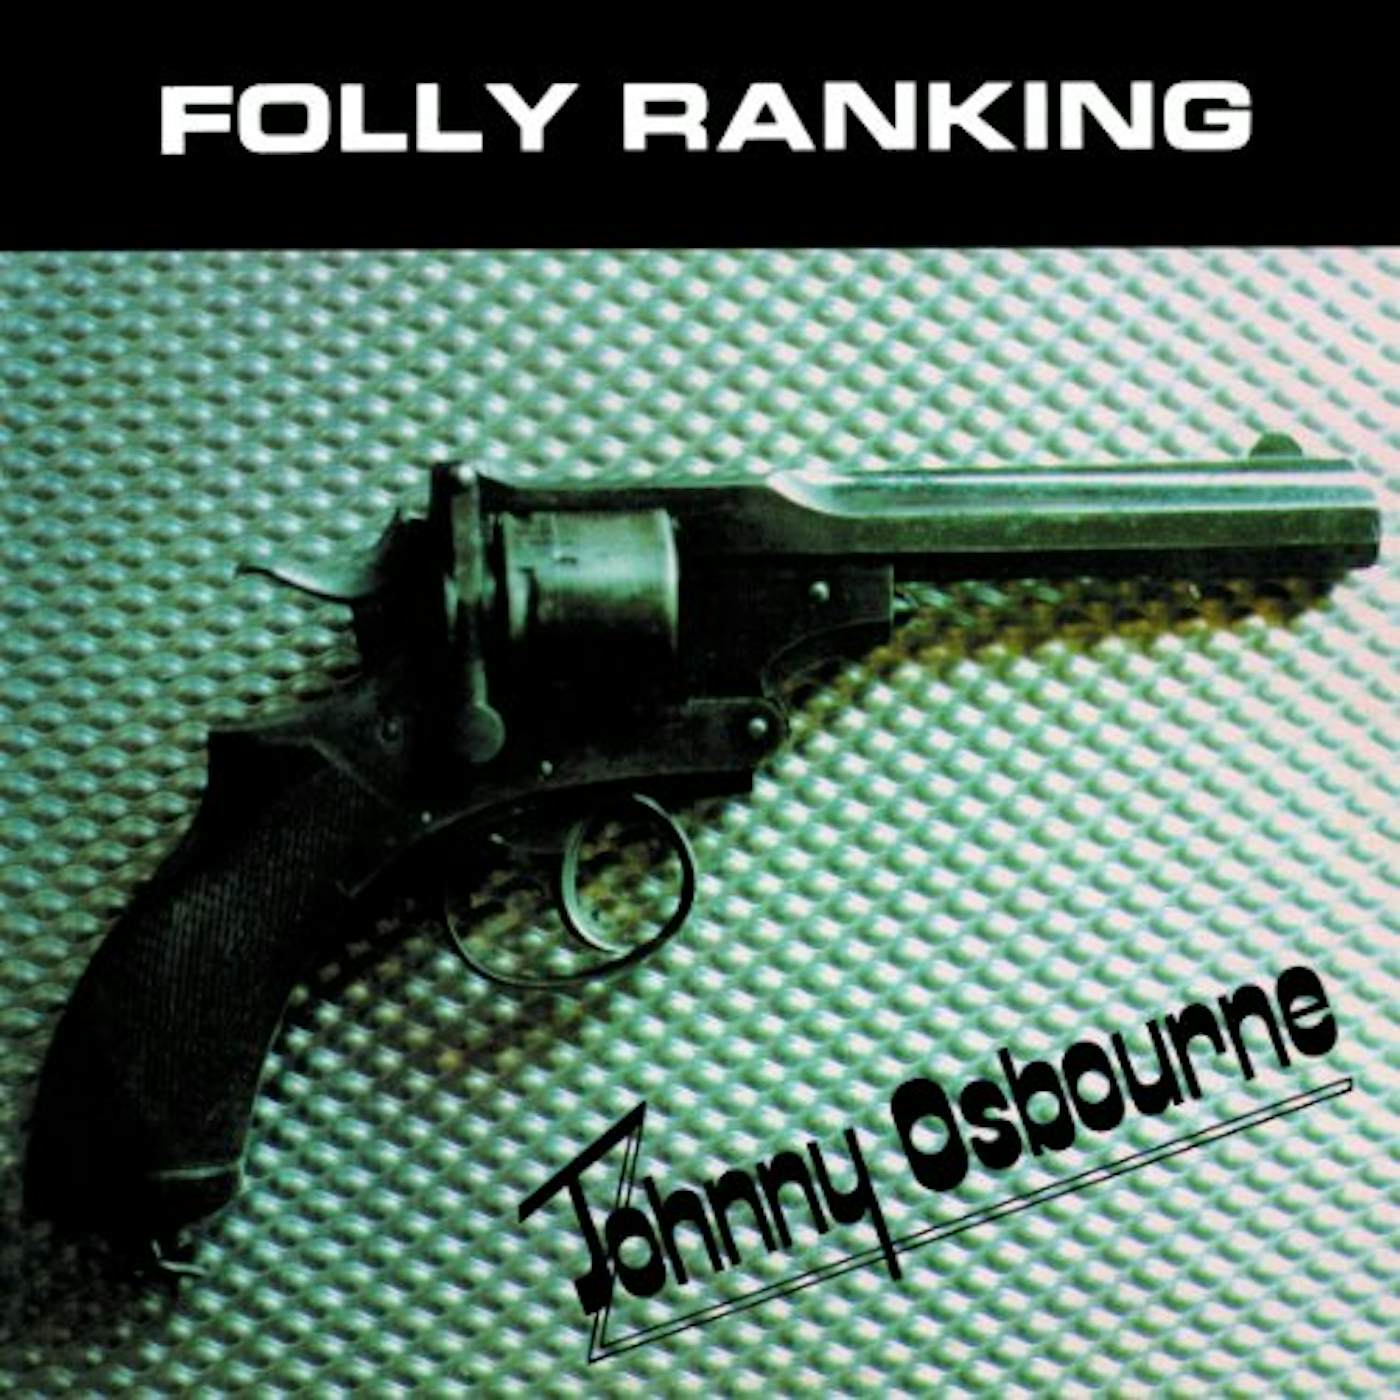 Johnny Osbourne Folly Ranking Vinyl Record